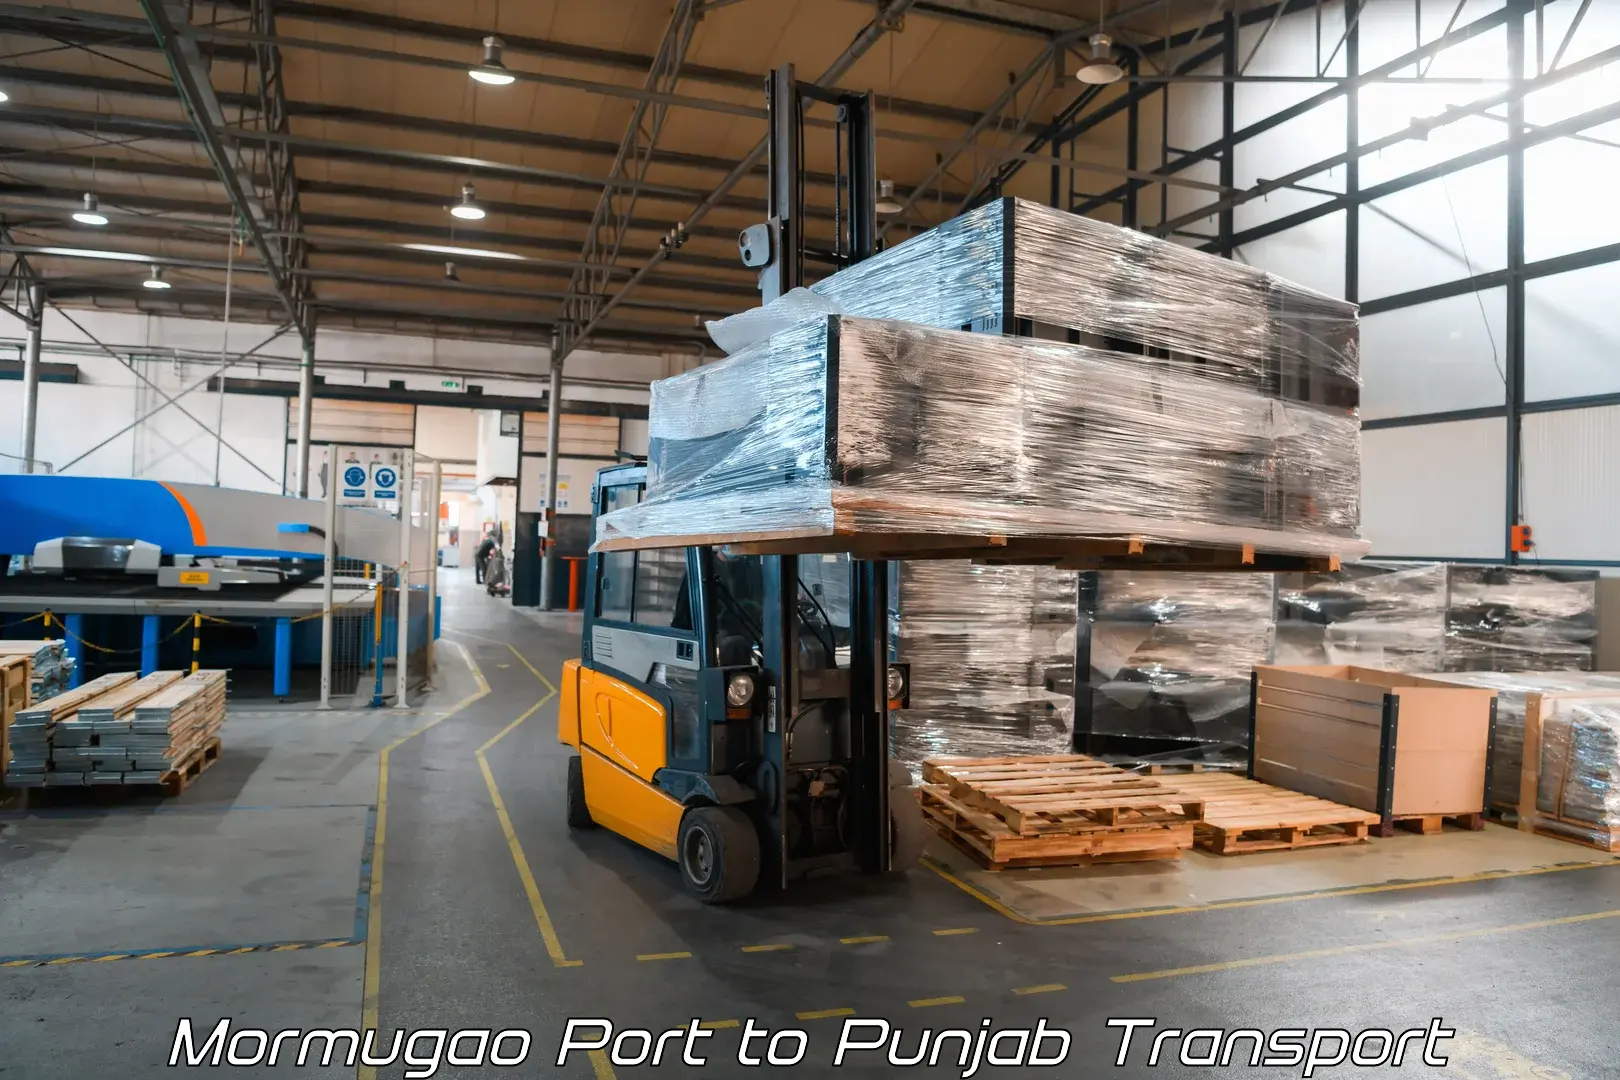 Container transport service Mormugao Port to Dasuya